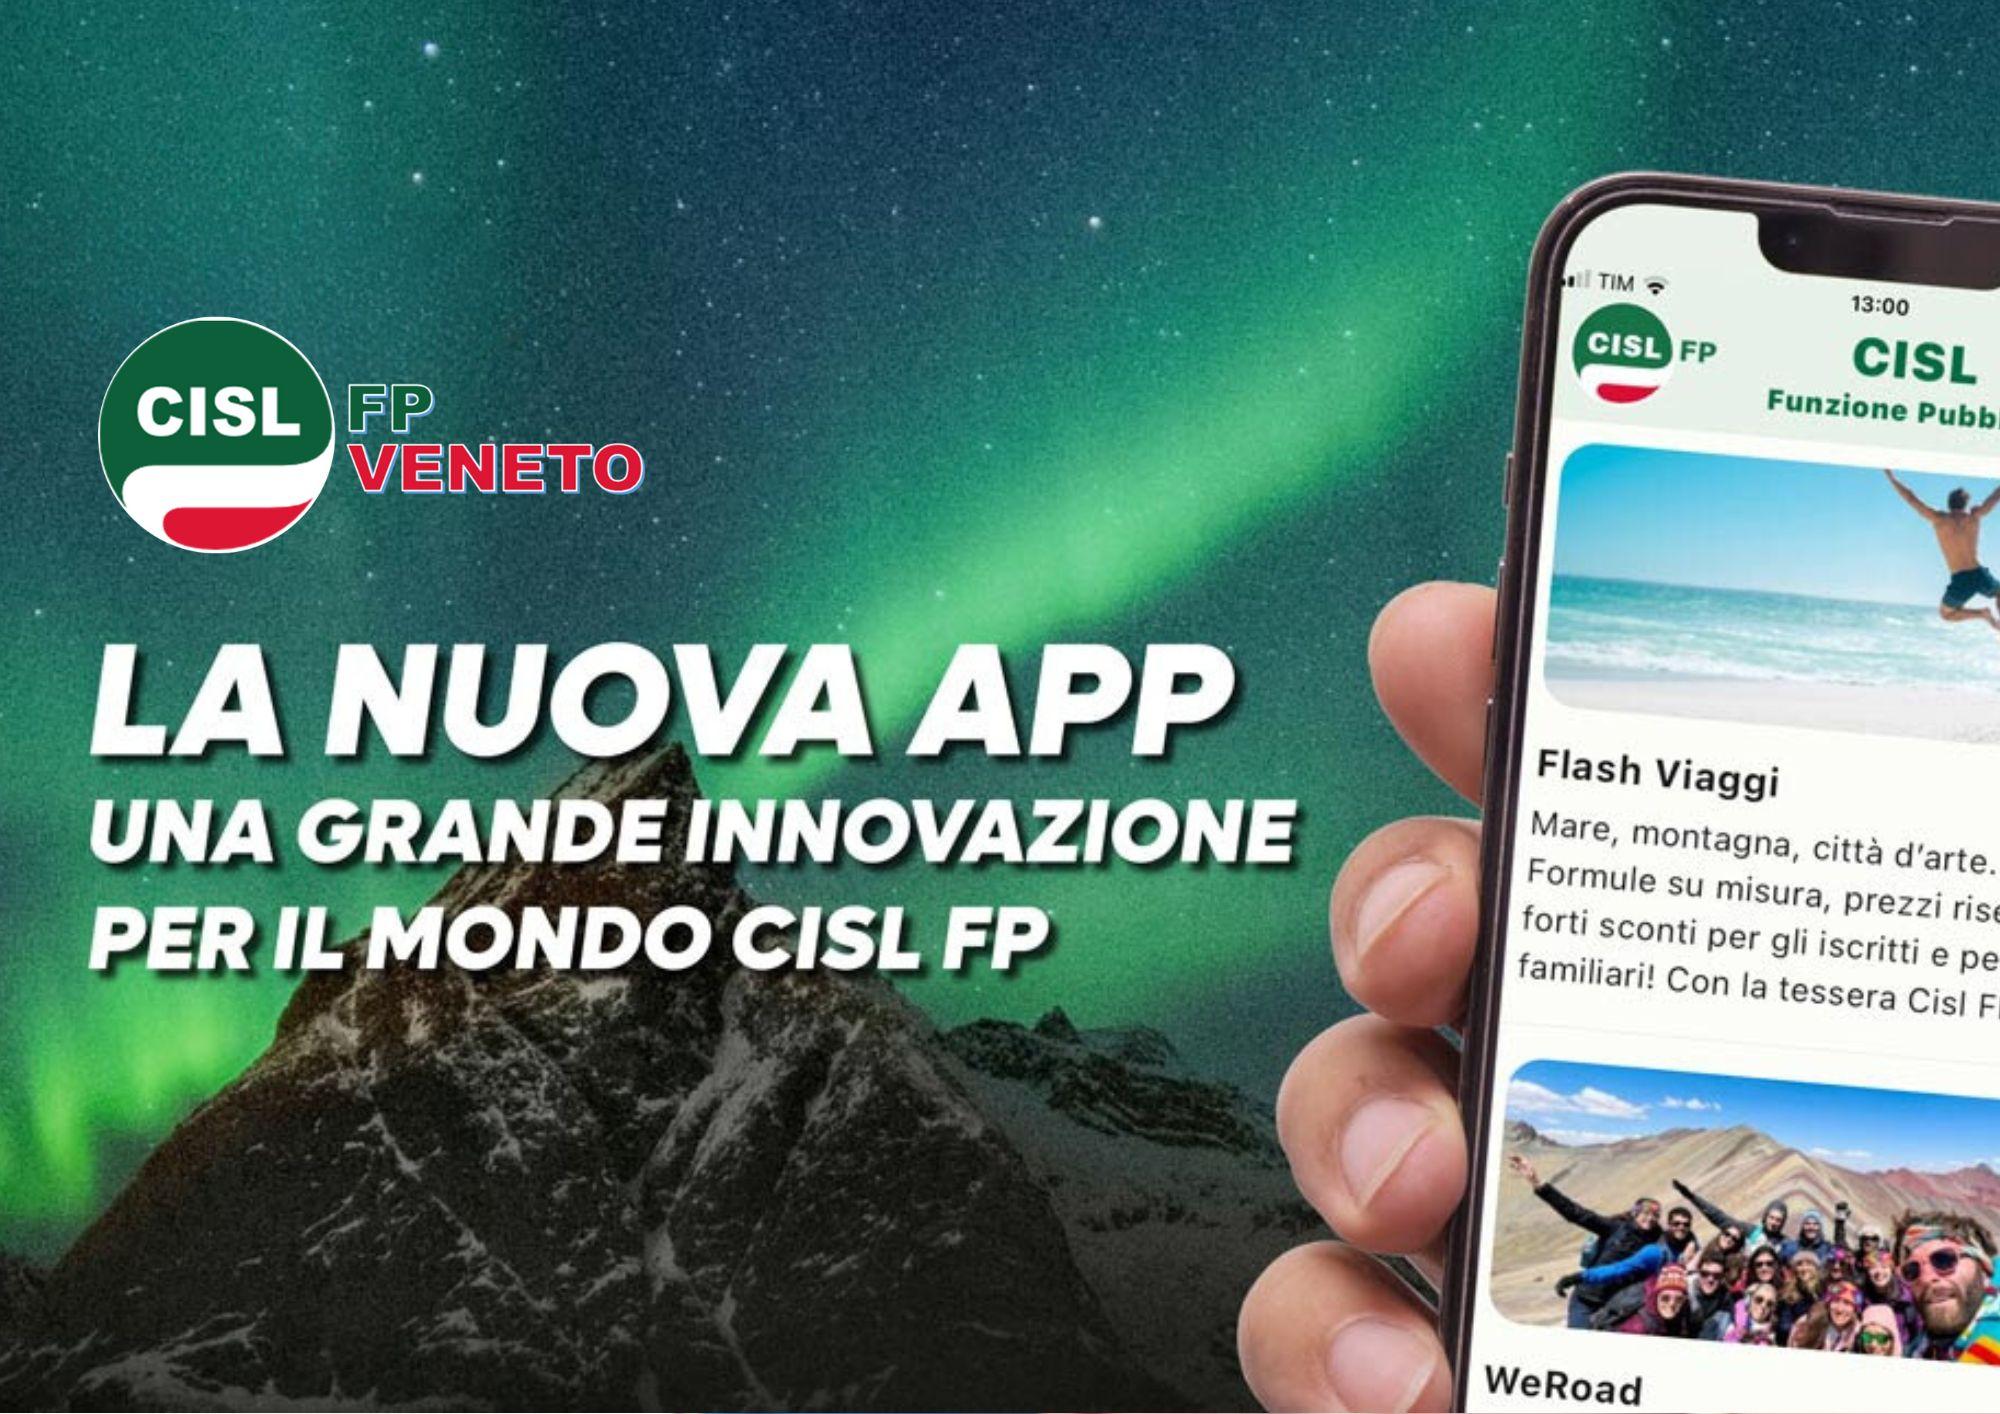 CISL FP Veneto. Scarica subito la App CISL FP sul tuo smartphone. Resta connesso. Fallo da qui!